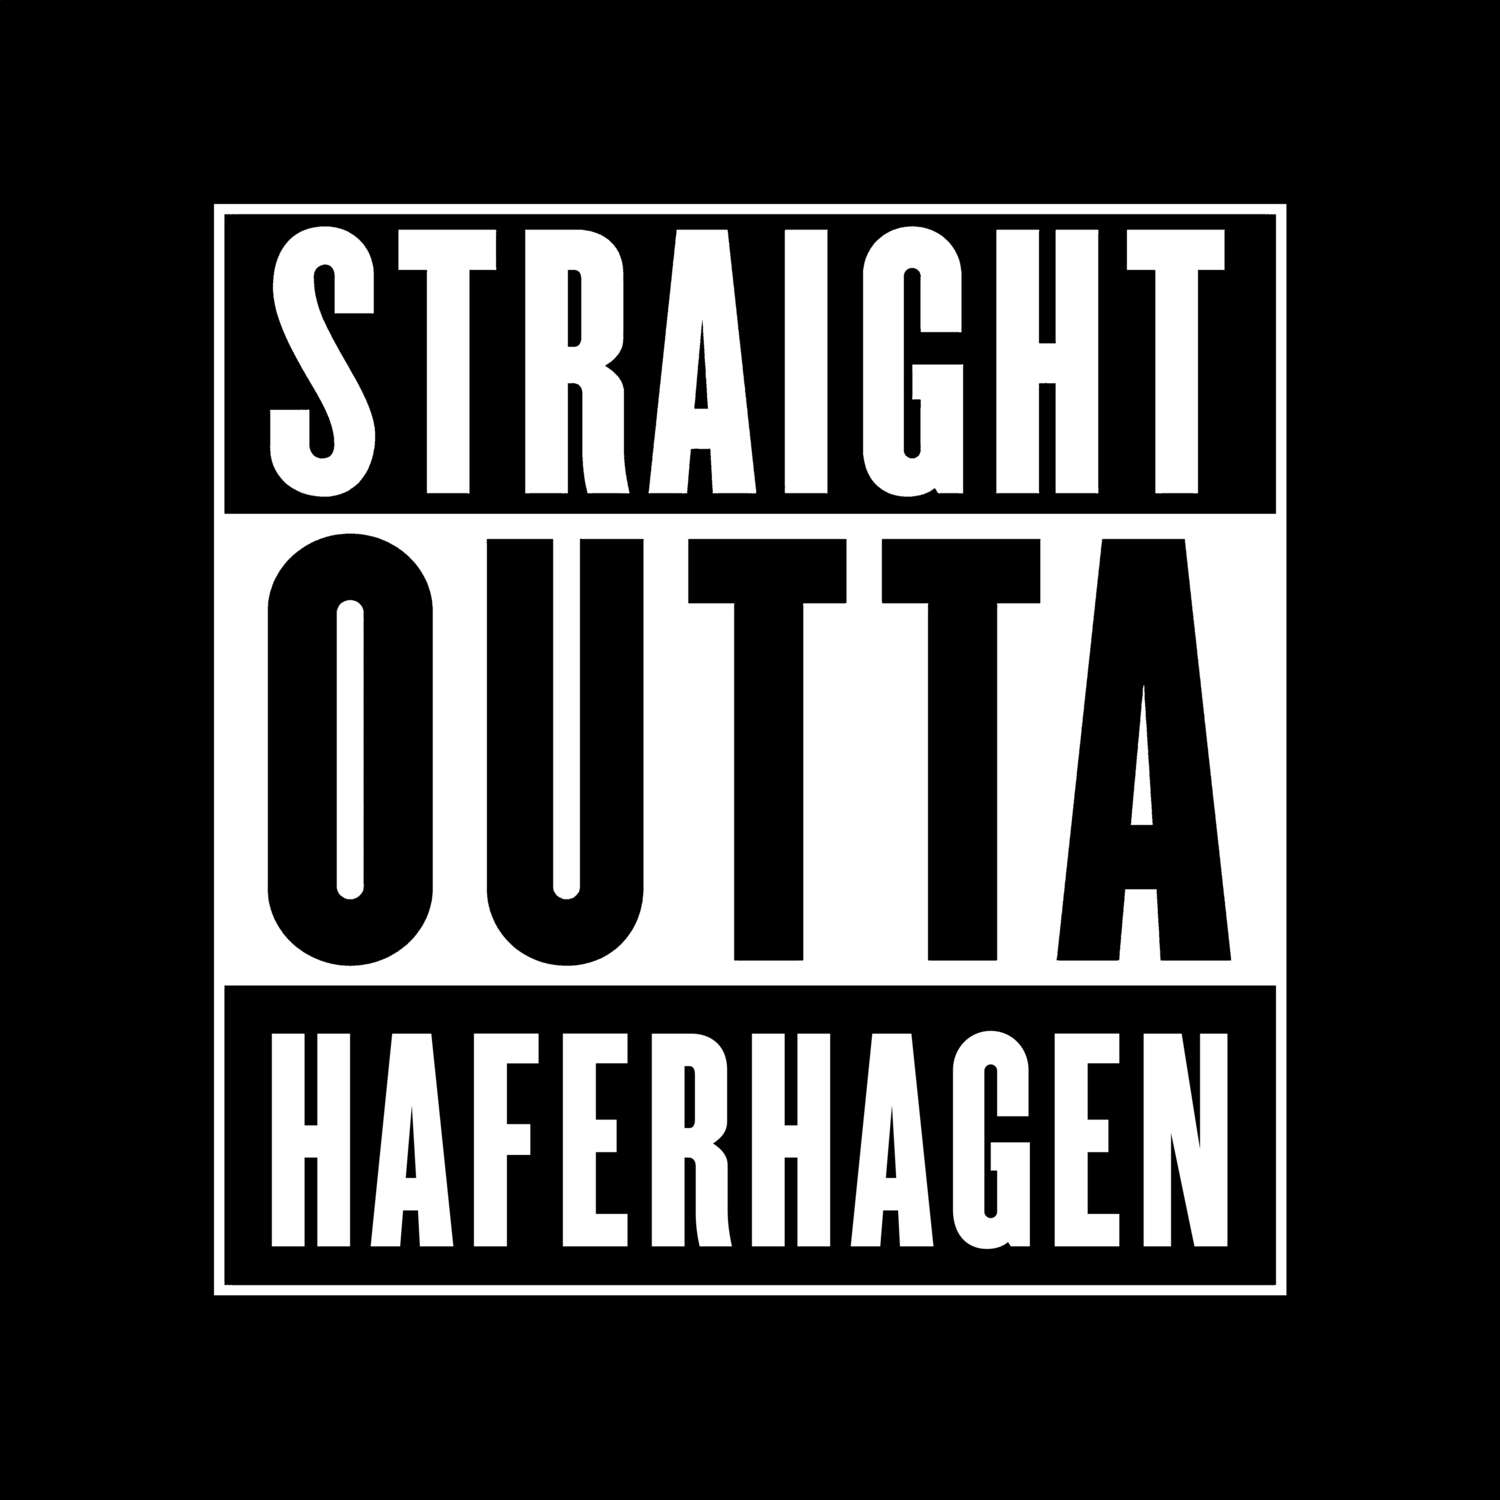 Haferhagen T-Shirt »Straight Outta«